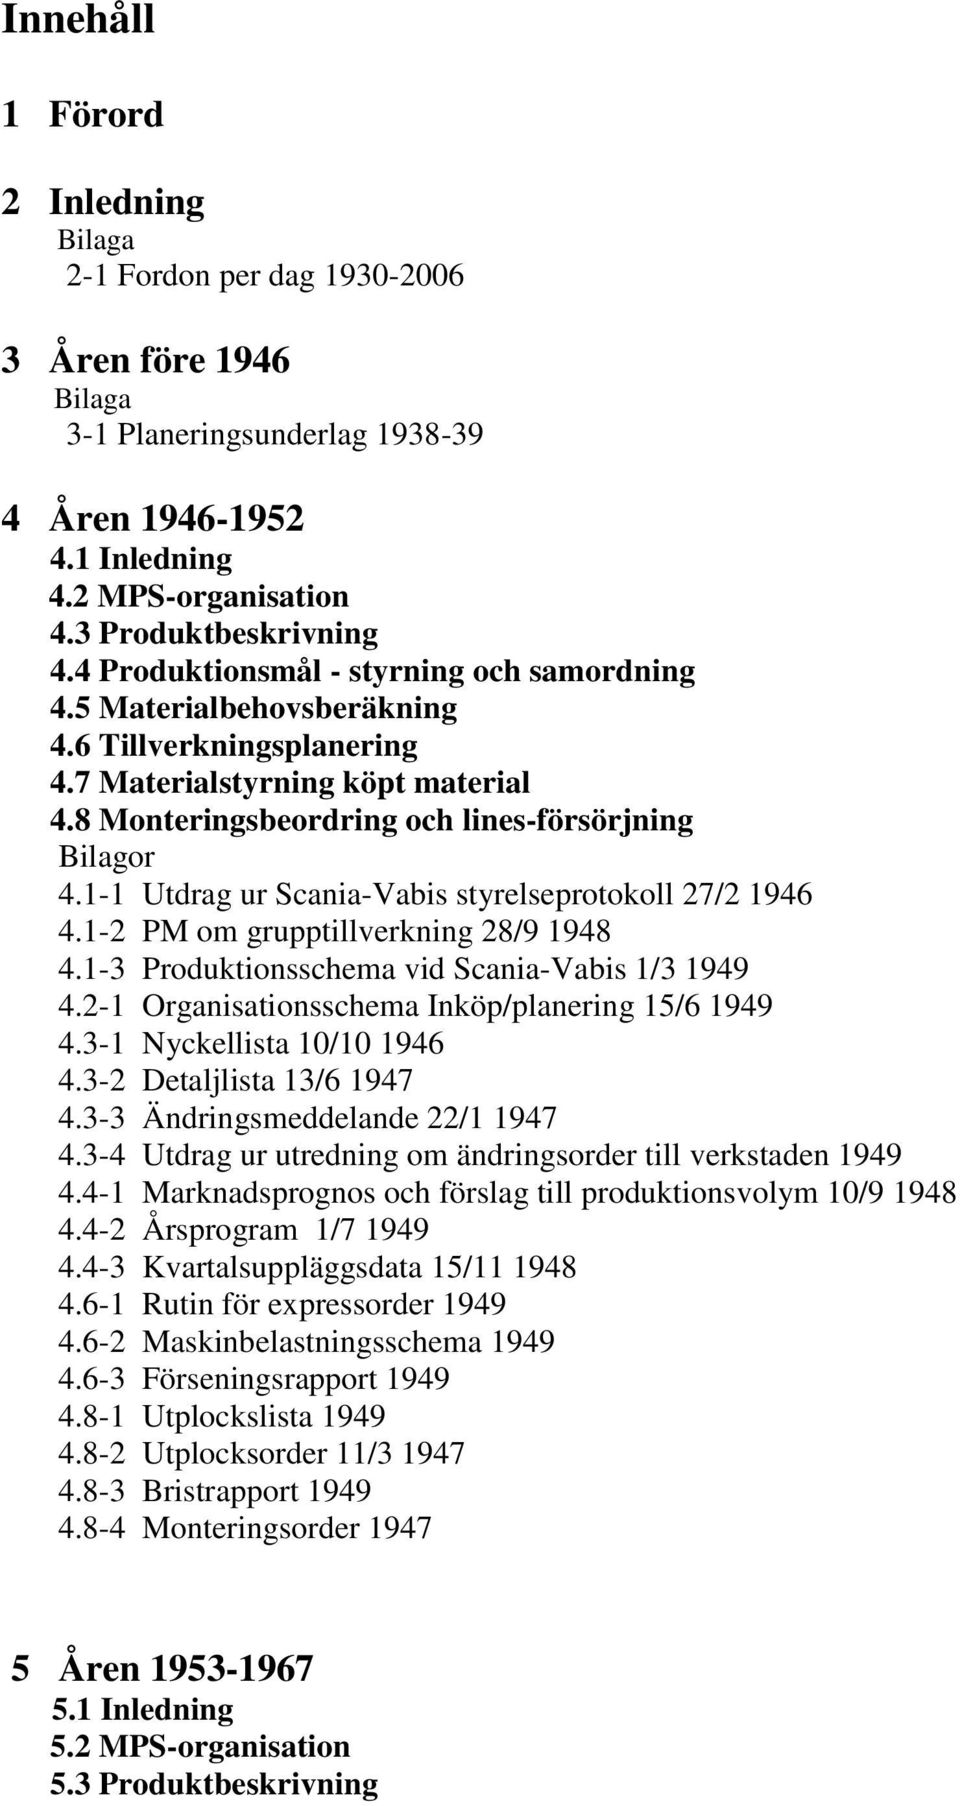 1-1 Utdrag ur Scania-Vabis styrelseprotokoll 27/2 1946 4.1-2 PM om grupptillverkning 28/9 1948 4.1-3 Produktionsschema vid Scania-Vabis 1/3 1949 4.2-1 Organisationsschema Inköp/planering 15/6 1949 4.